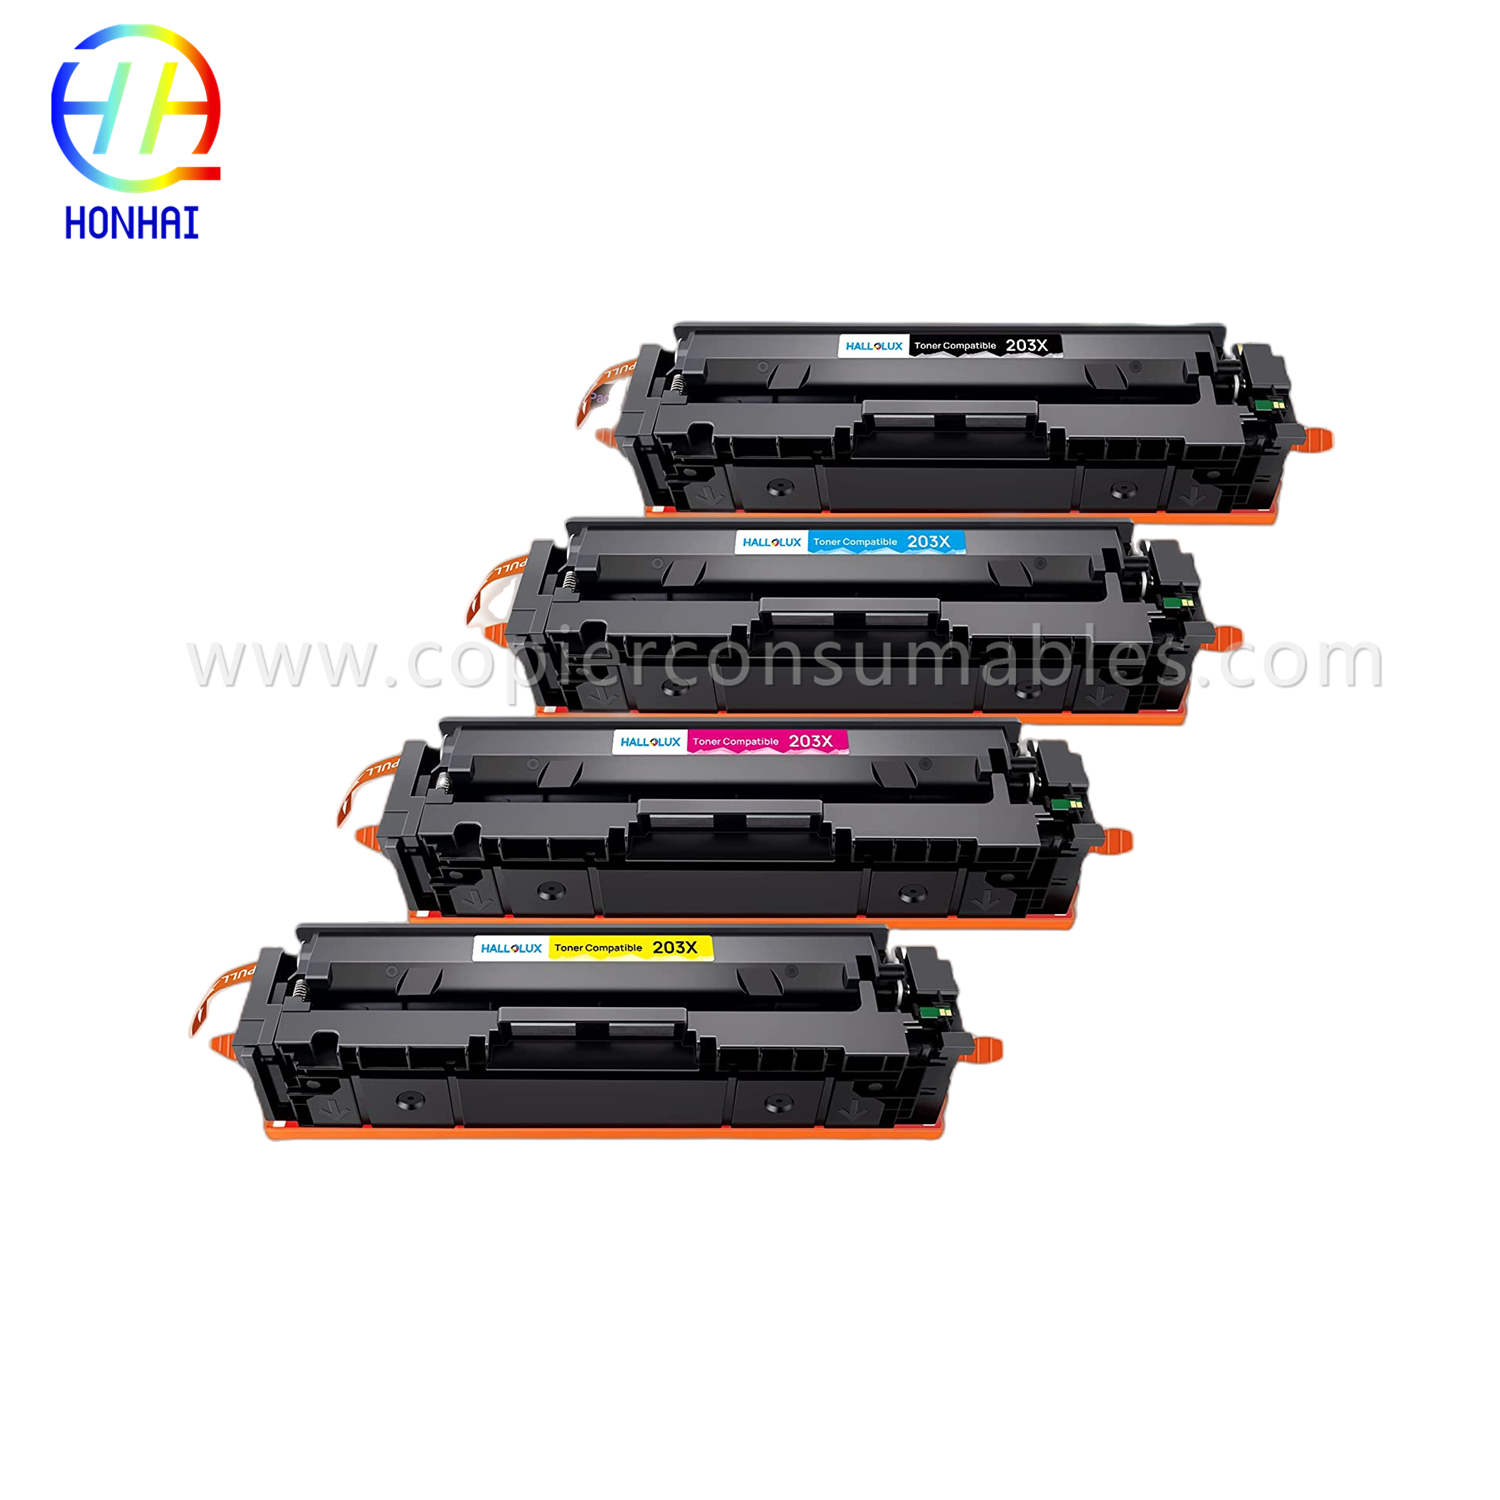 https://www.copierhonhaitech.com/toner-cartridge-for-hp-colour-laserjet-pro-m254dn-m254dw-m254nw-m280nw-m281cdw-m281fdn-m281fdw-203a-cfem-producta/